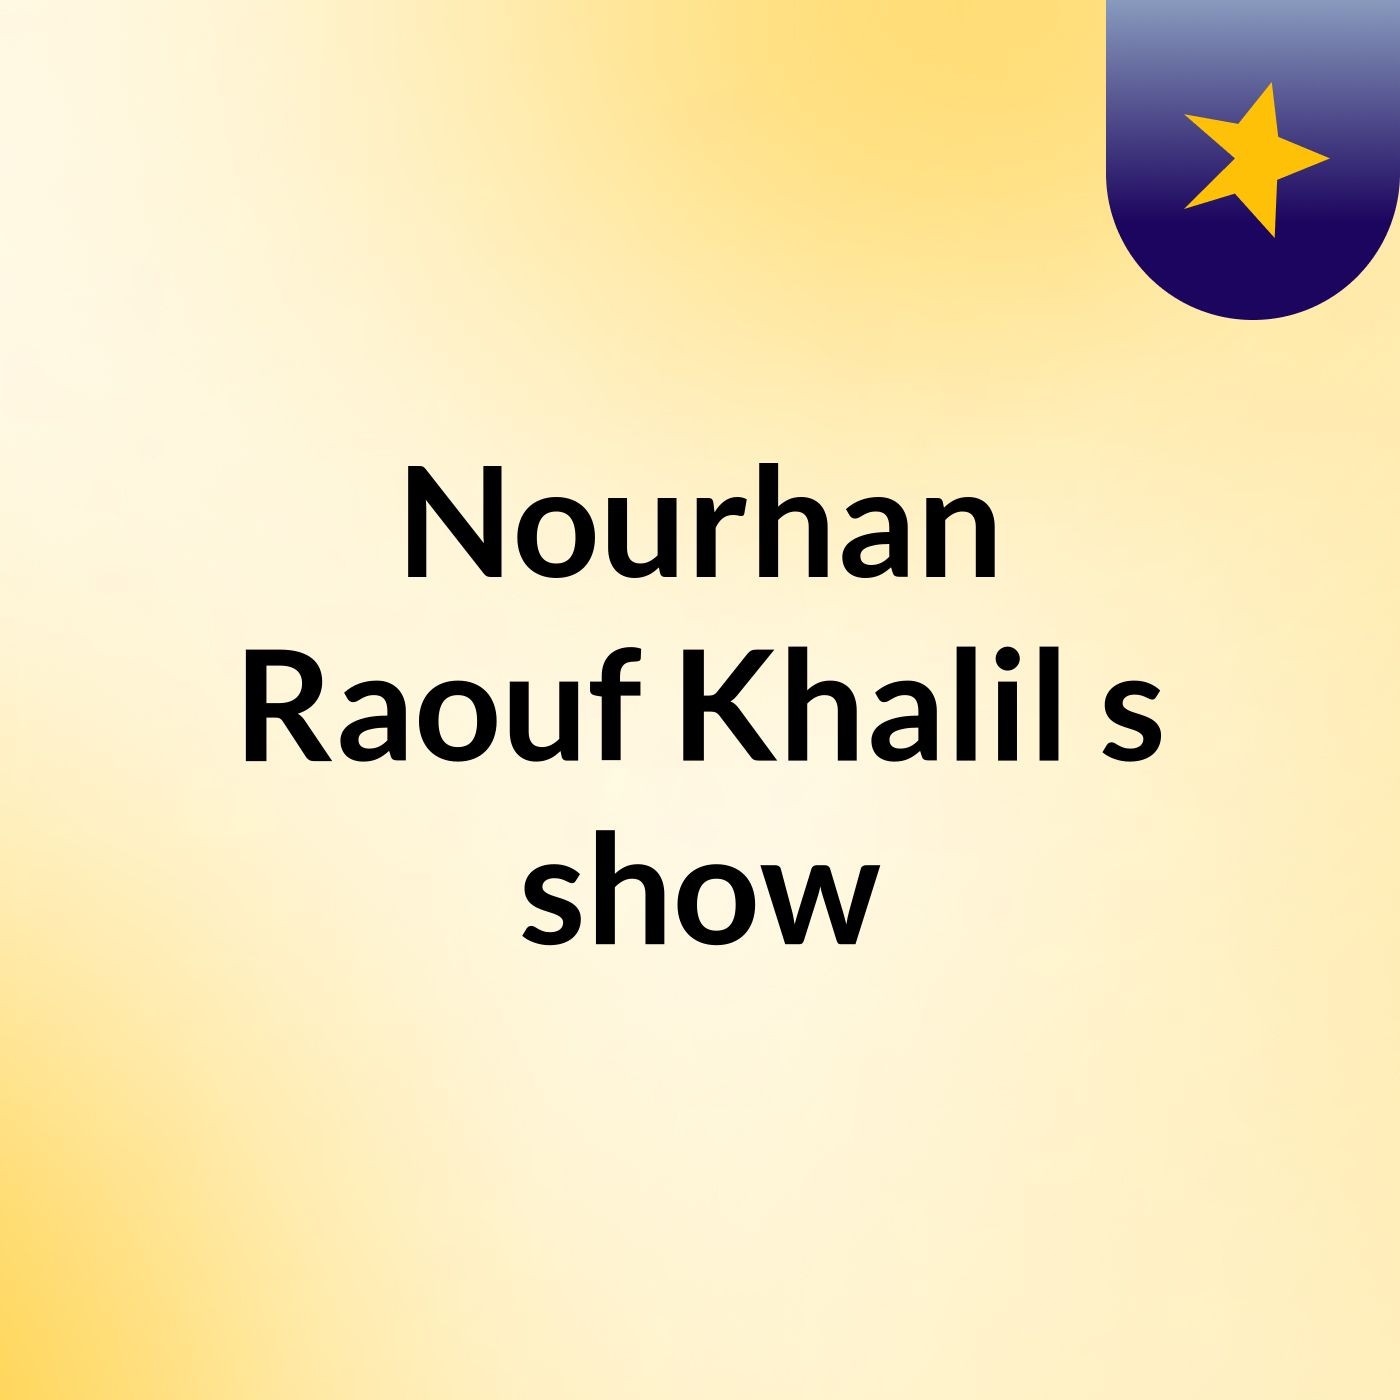 Nourhan Raouf Khalil's show